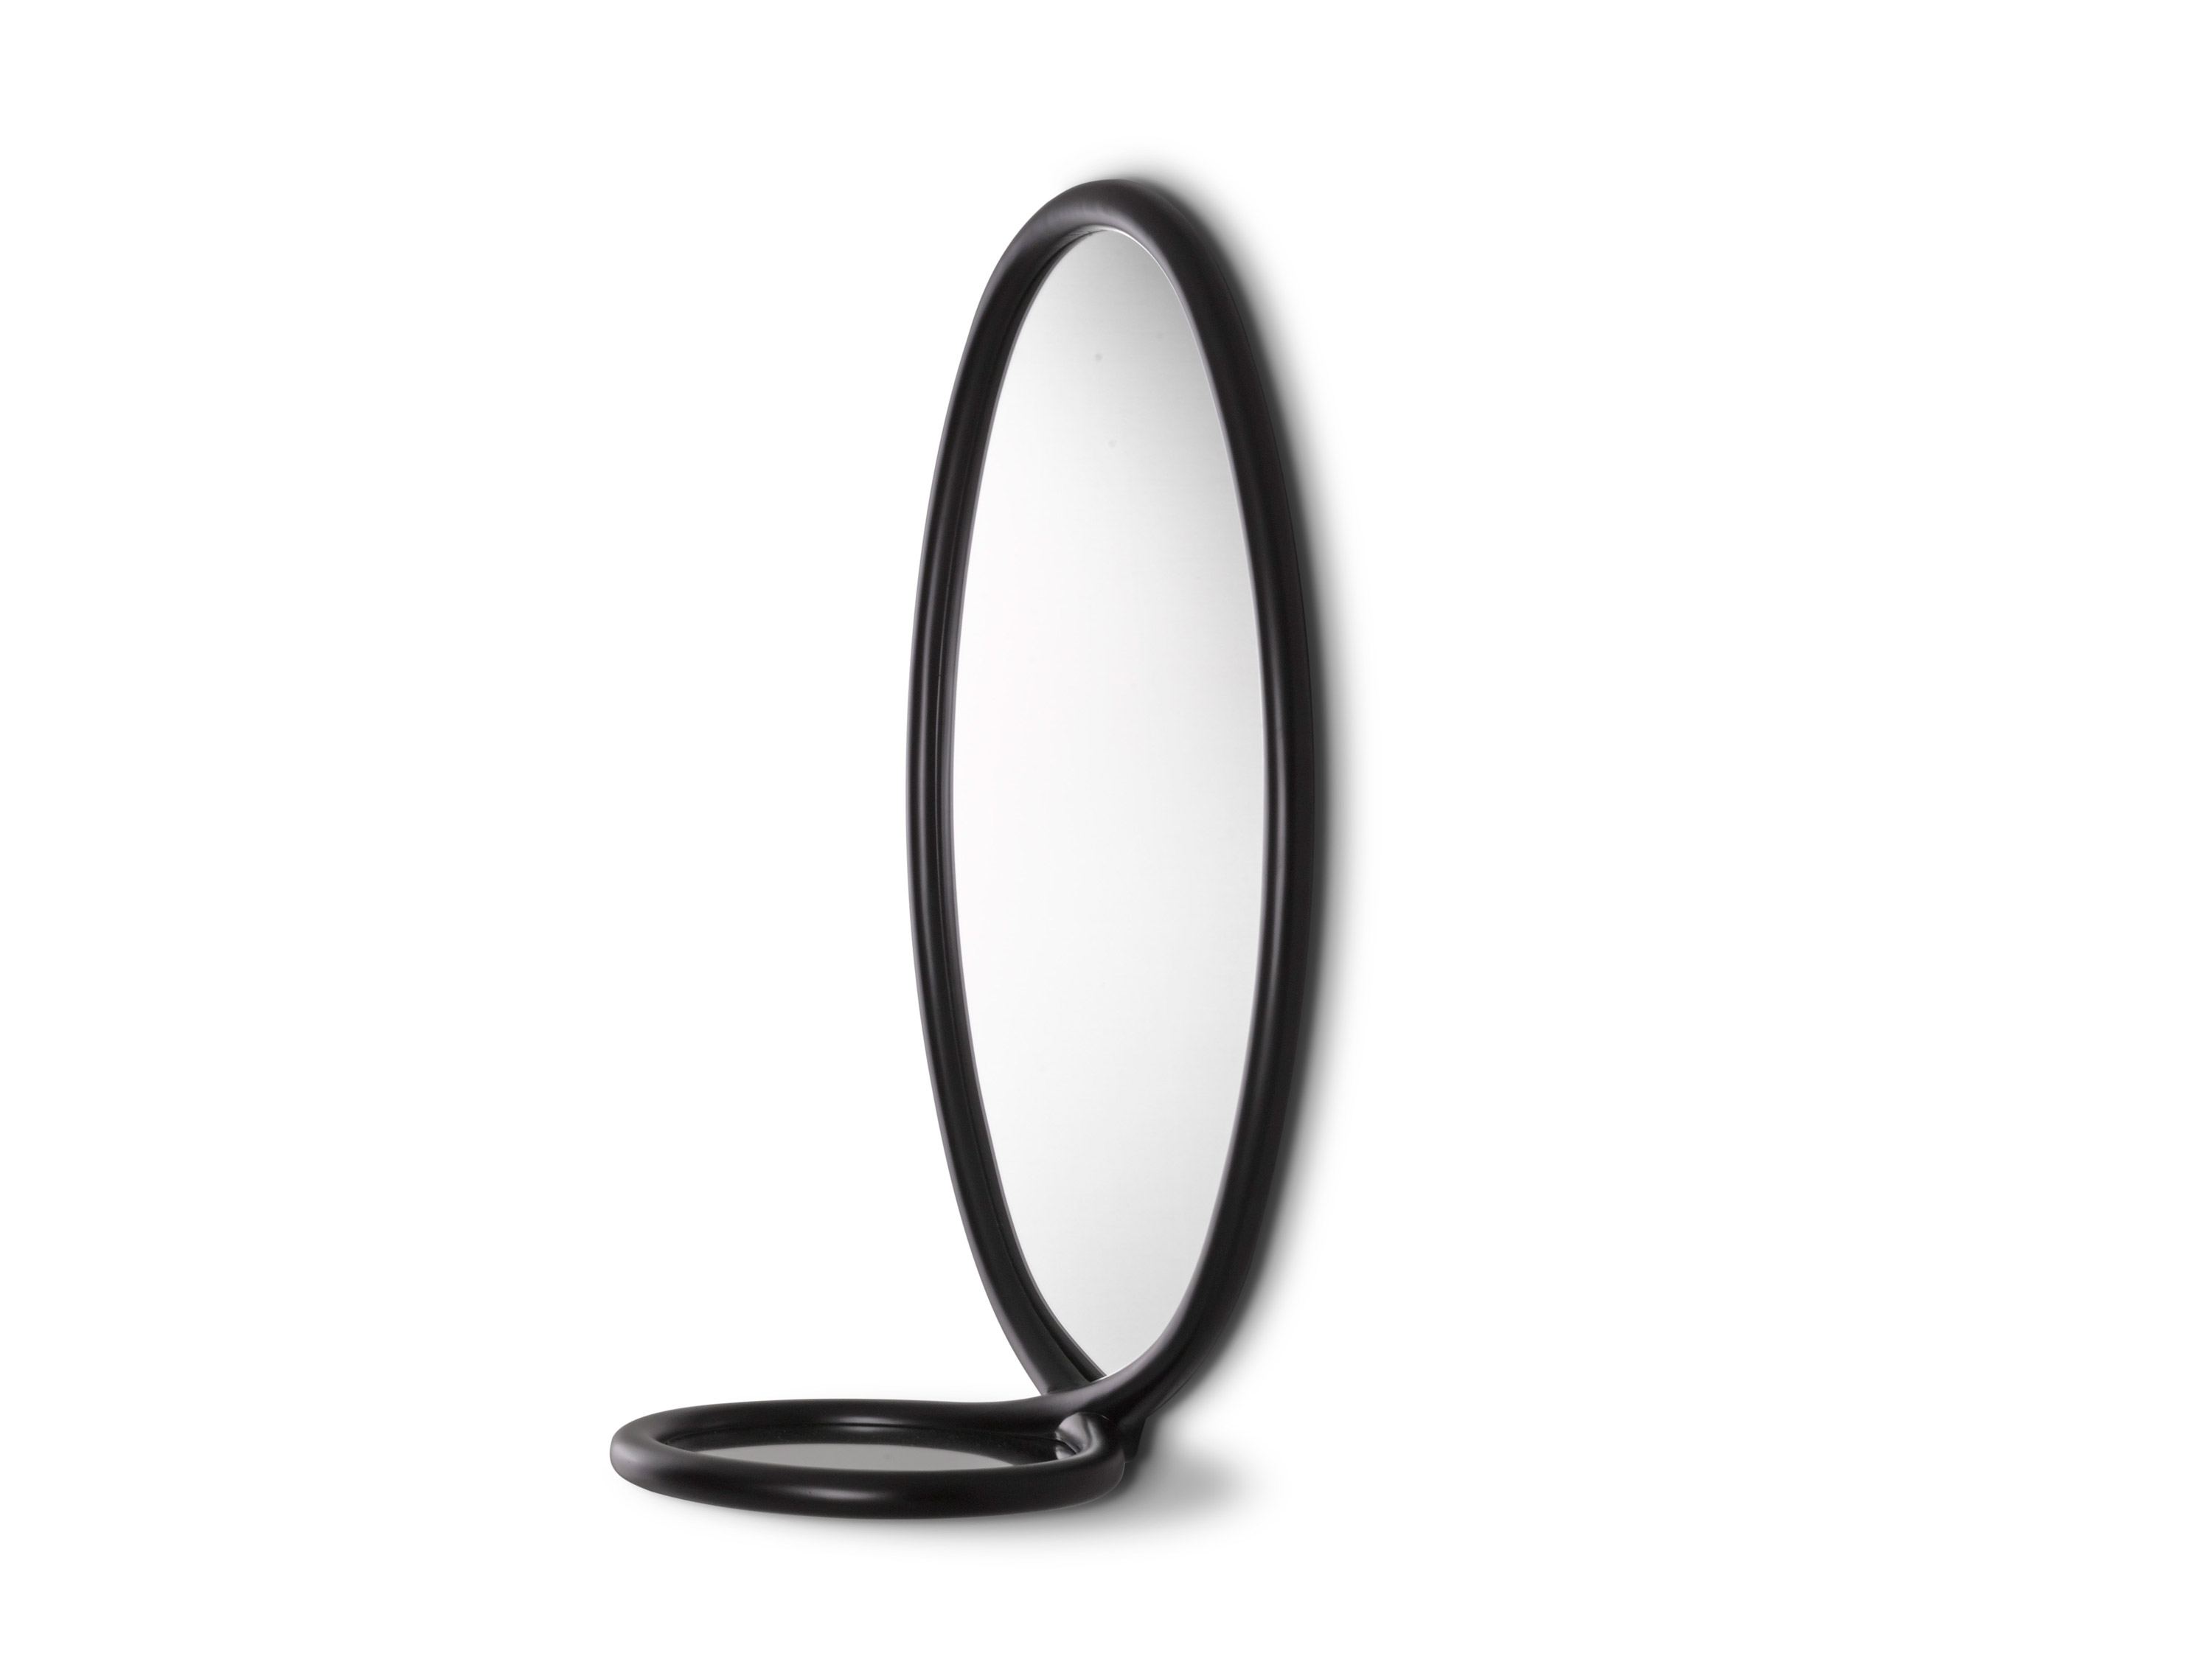 Porro, image:prodotti - Porro Spa - Loop Mirror